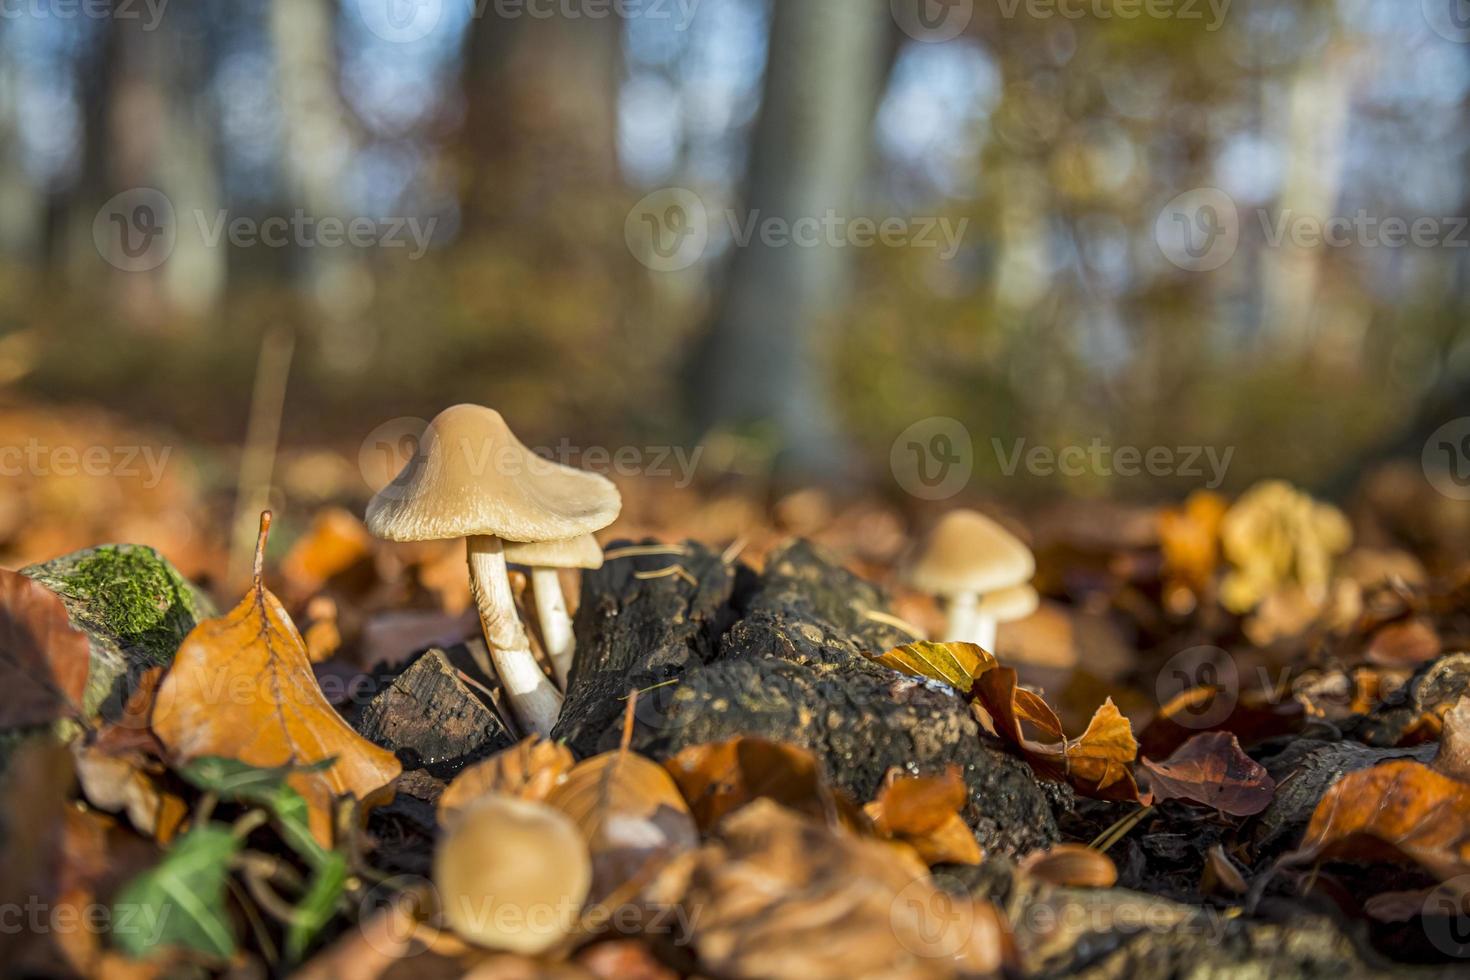 fungo selvatico della foresta nei boschi dell'Austria in autunno. la foto dei funghi con un delizioso bokeh è stata scattata in una calda giornata di settembre.